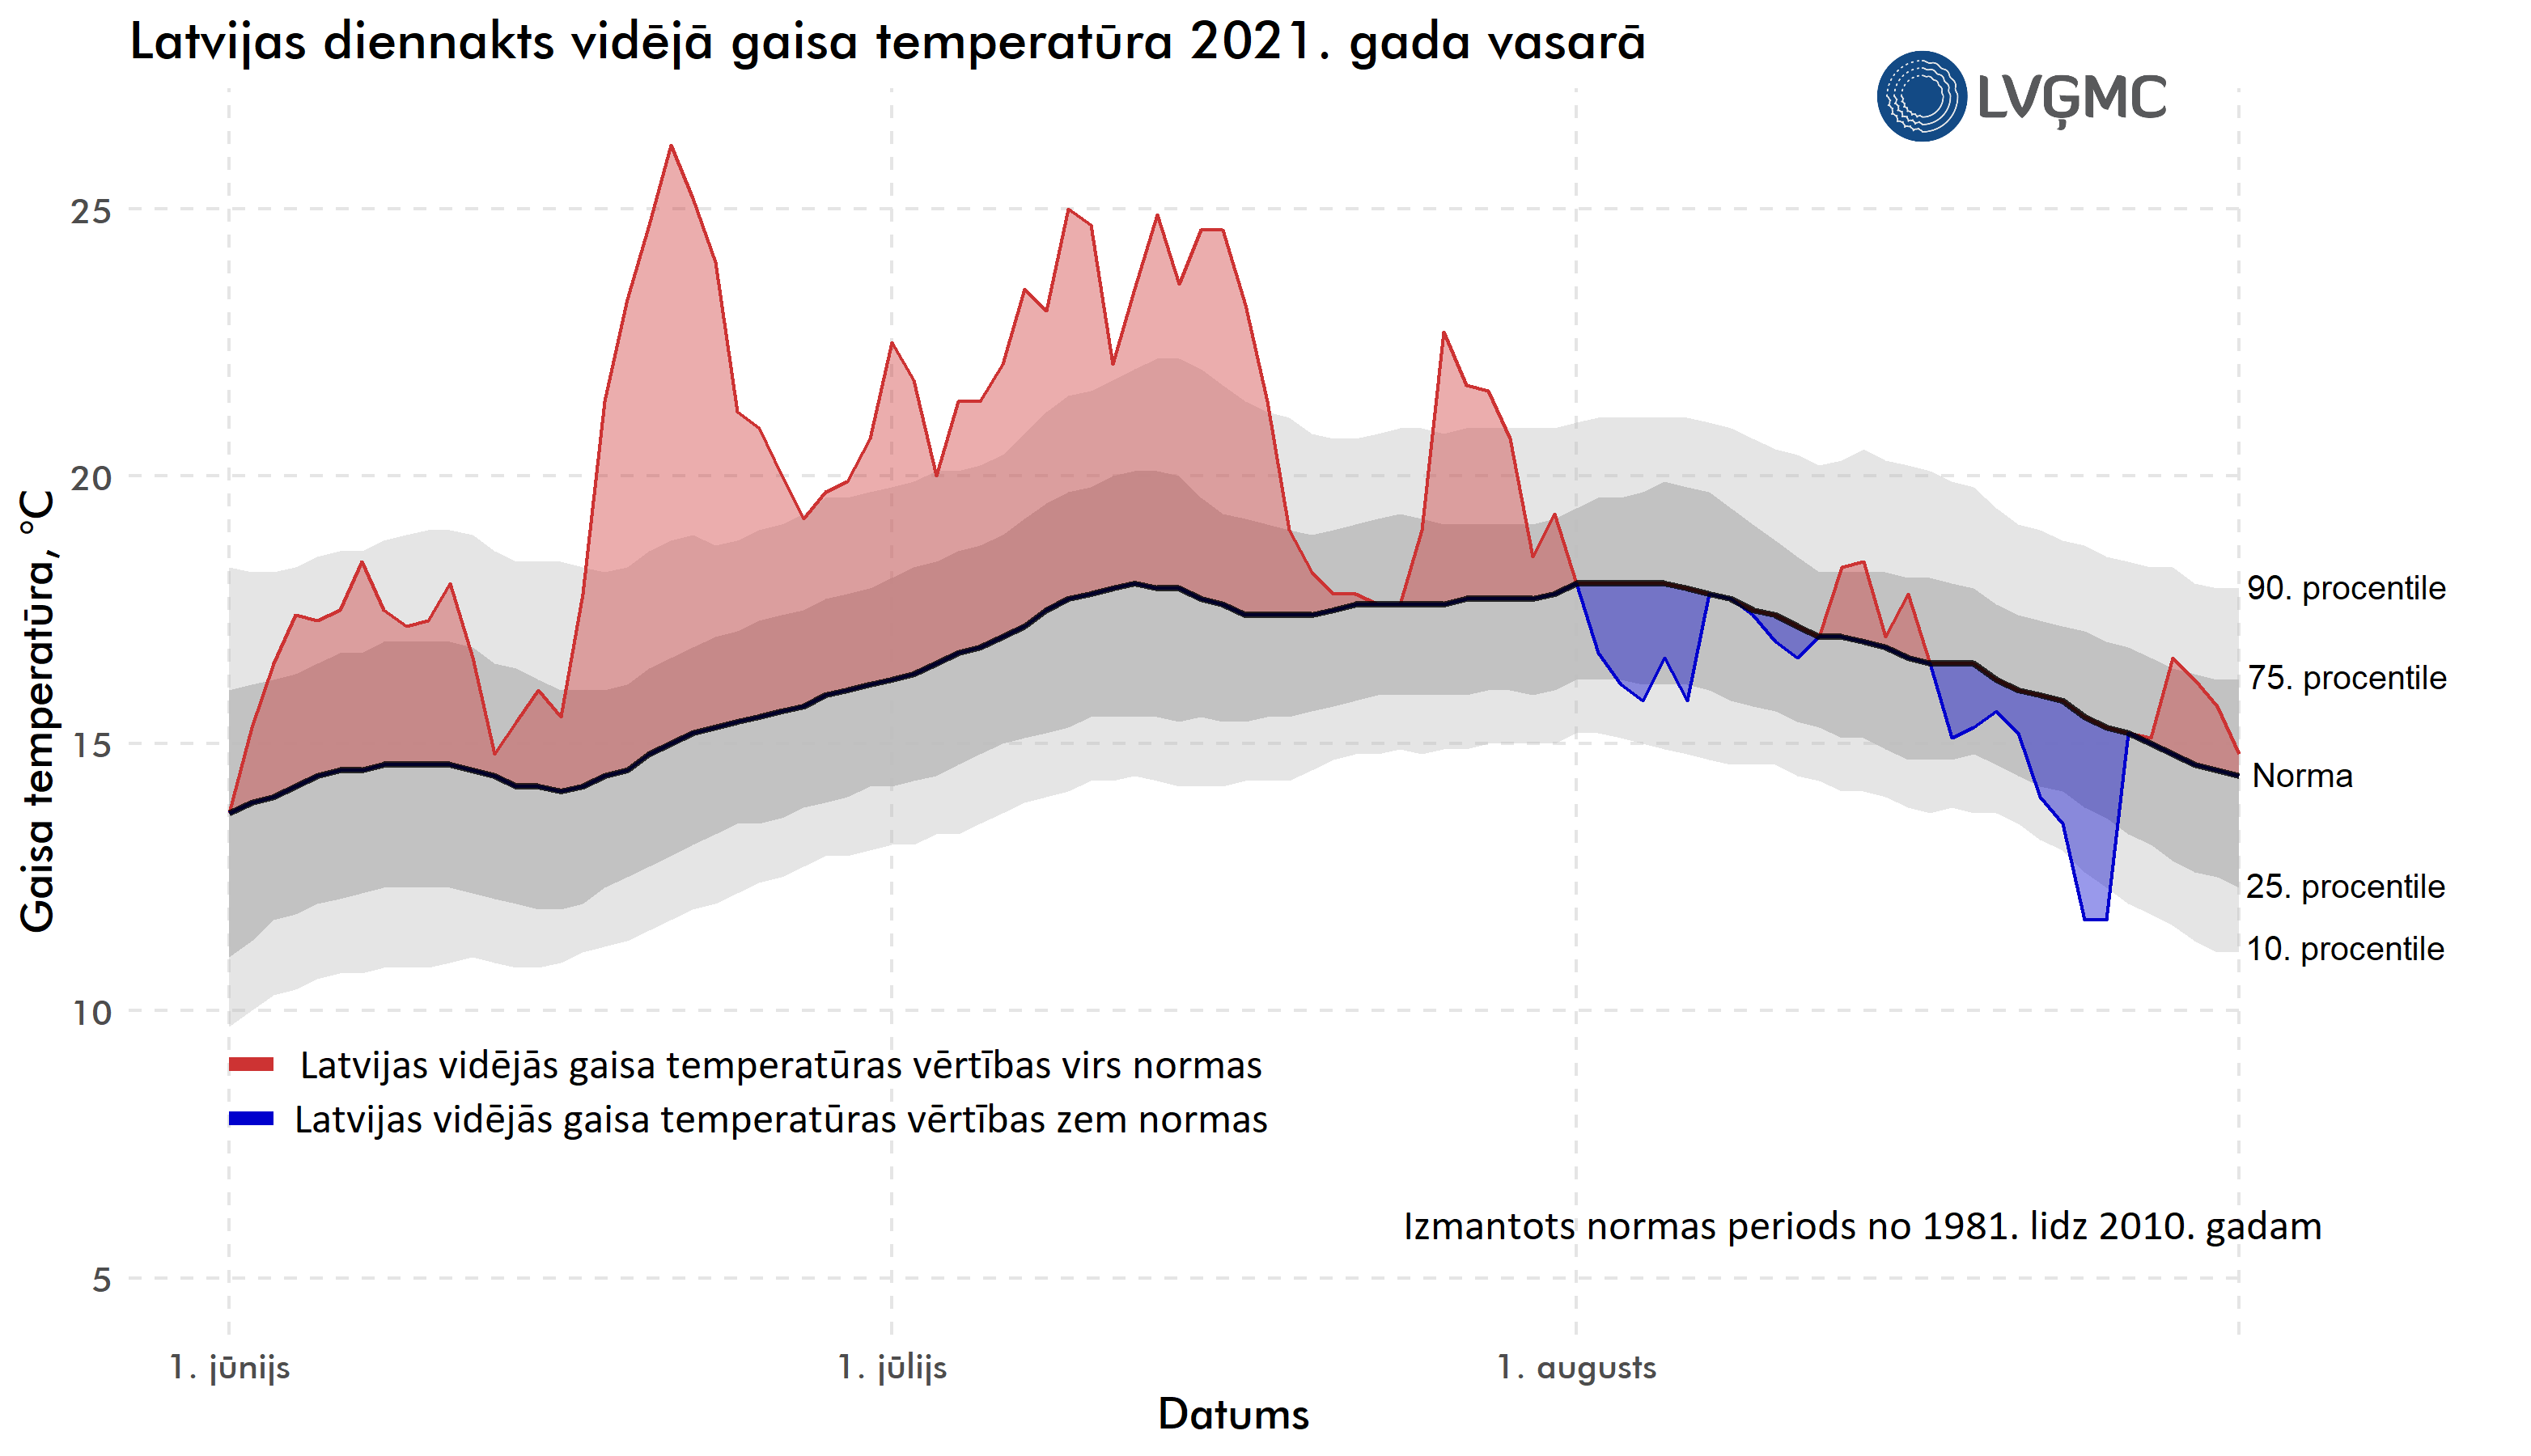 Latvijas diennakts vidējā gaisa temperatūra 2021. gada vasarā, °C